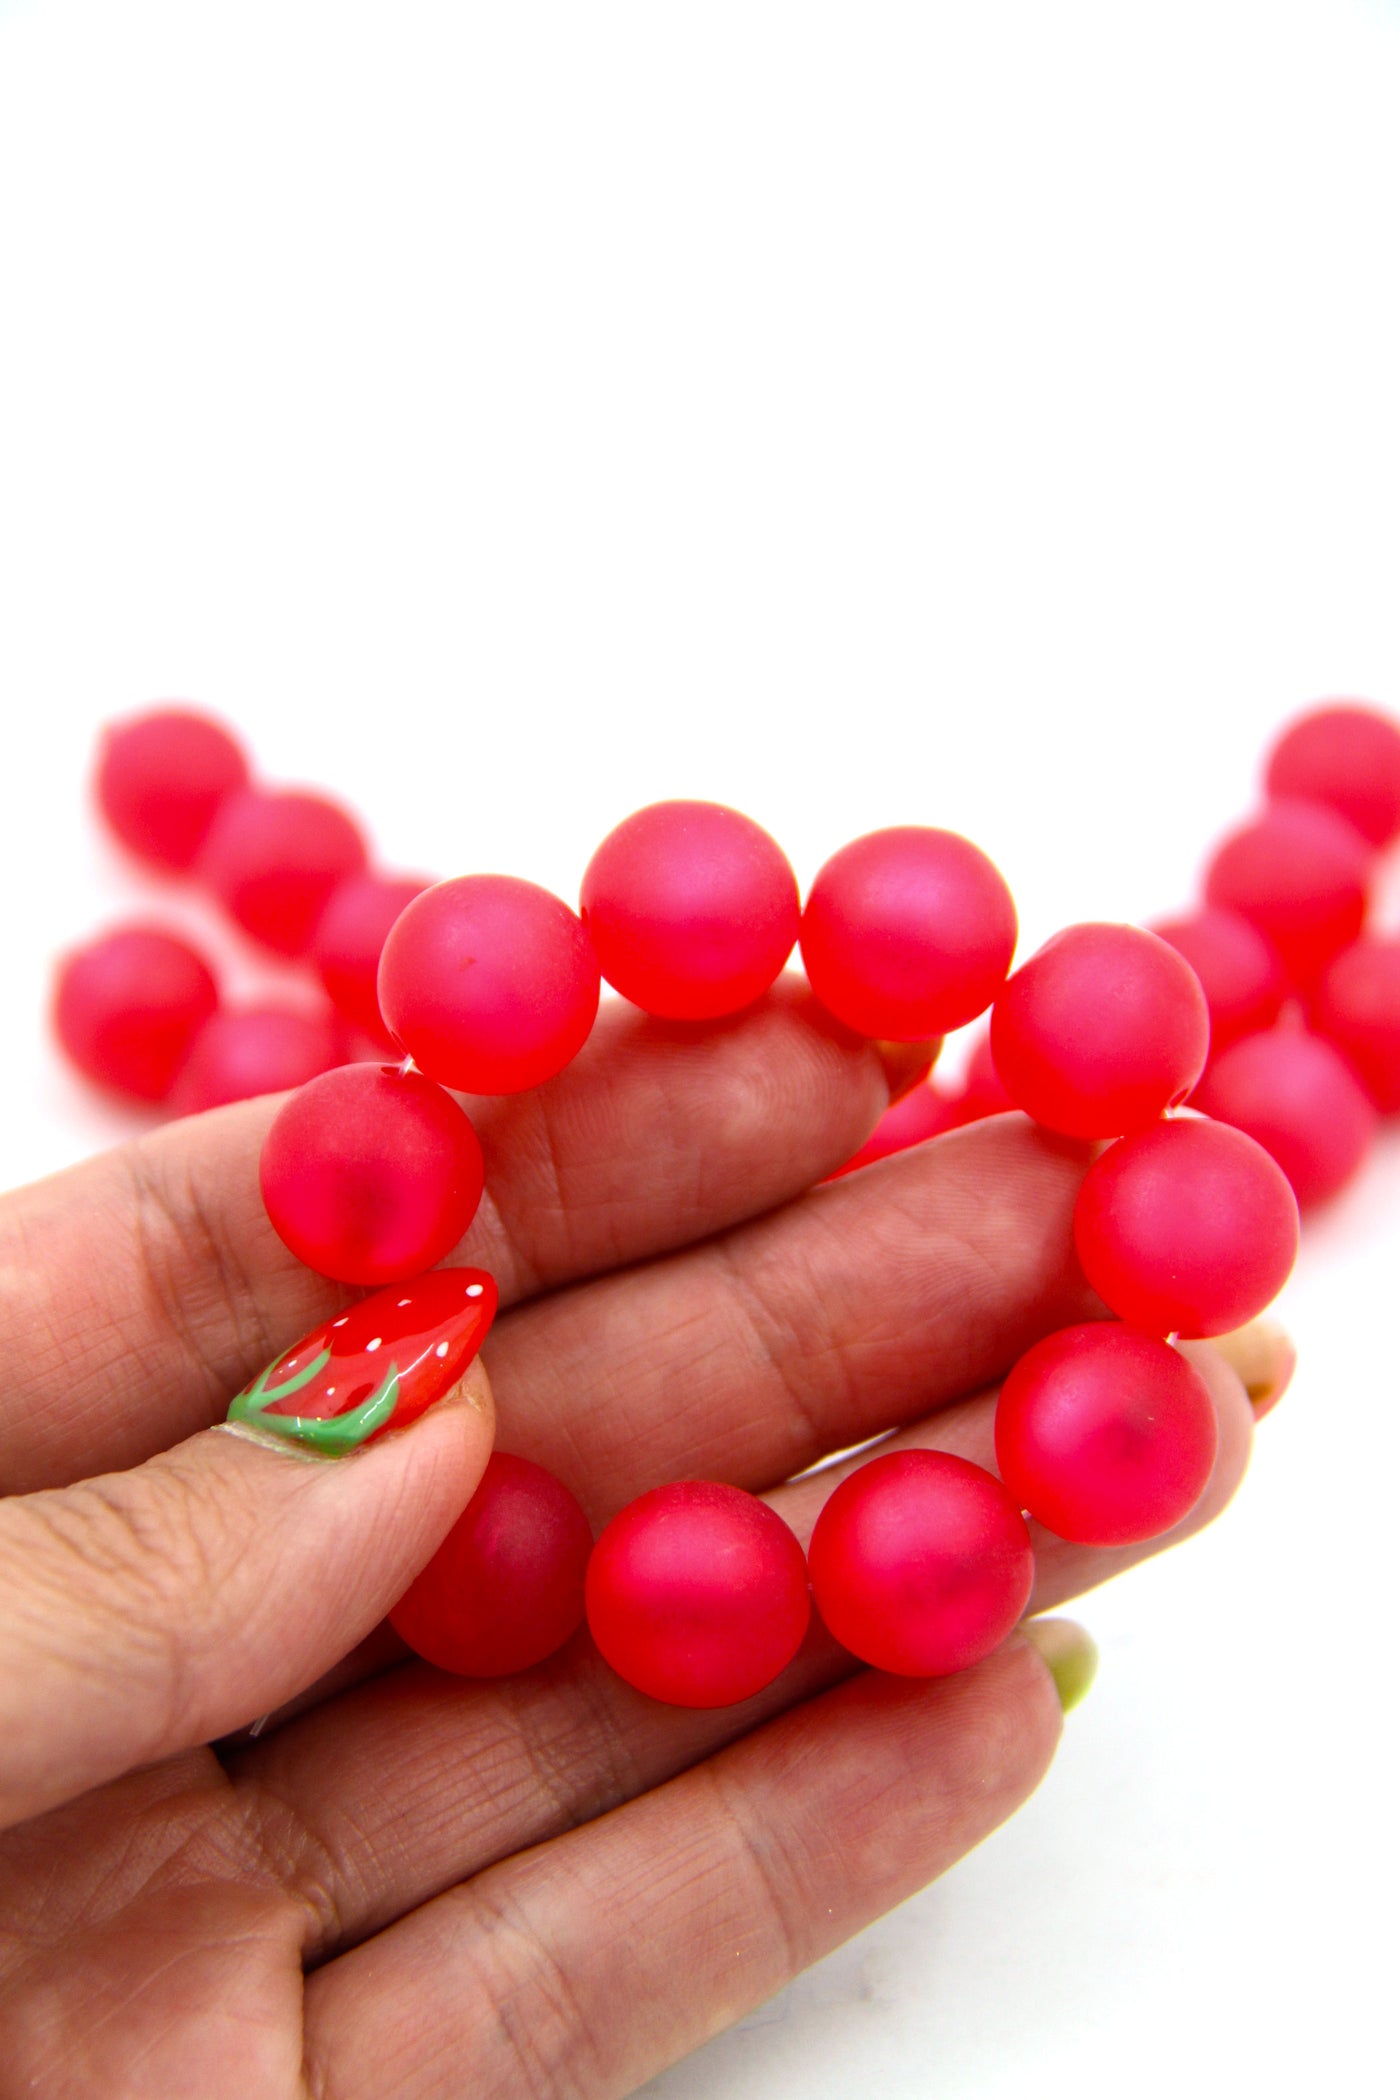 Satin Rose Pink German Resin Round Beads, 14mm, 10 Beads, Vintage Beads